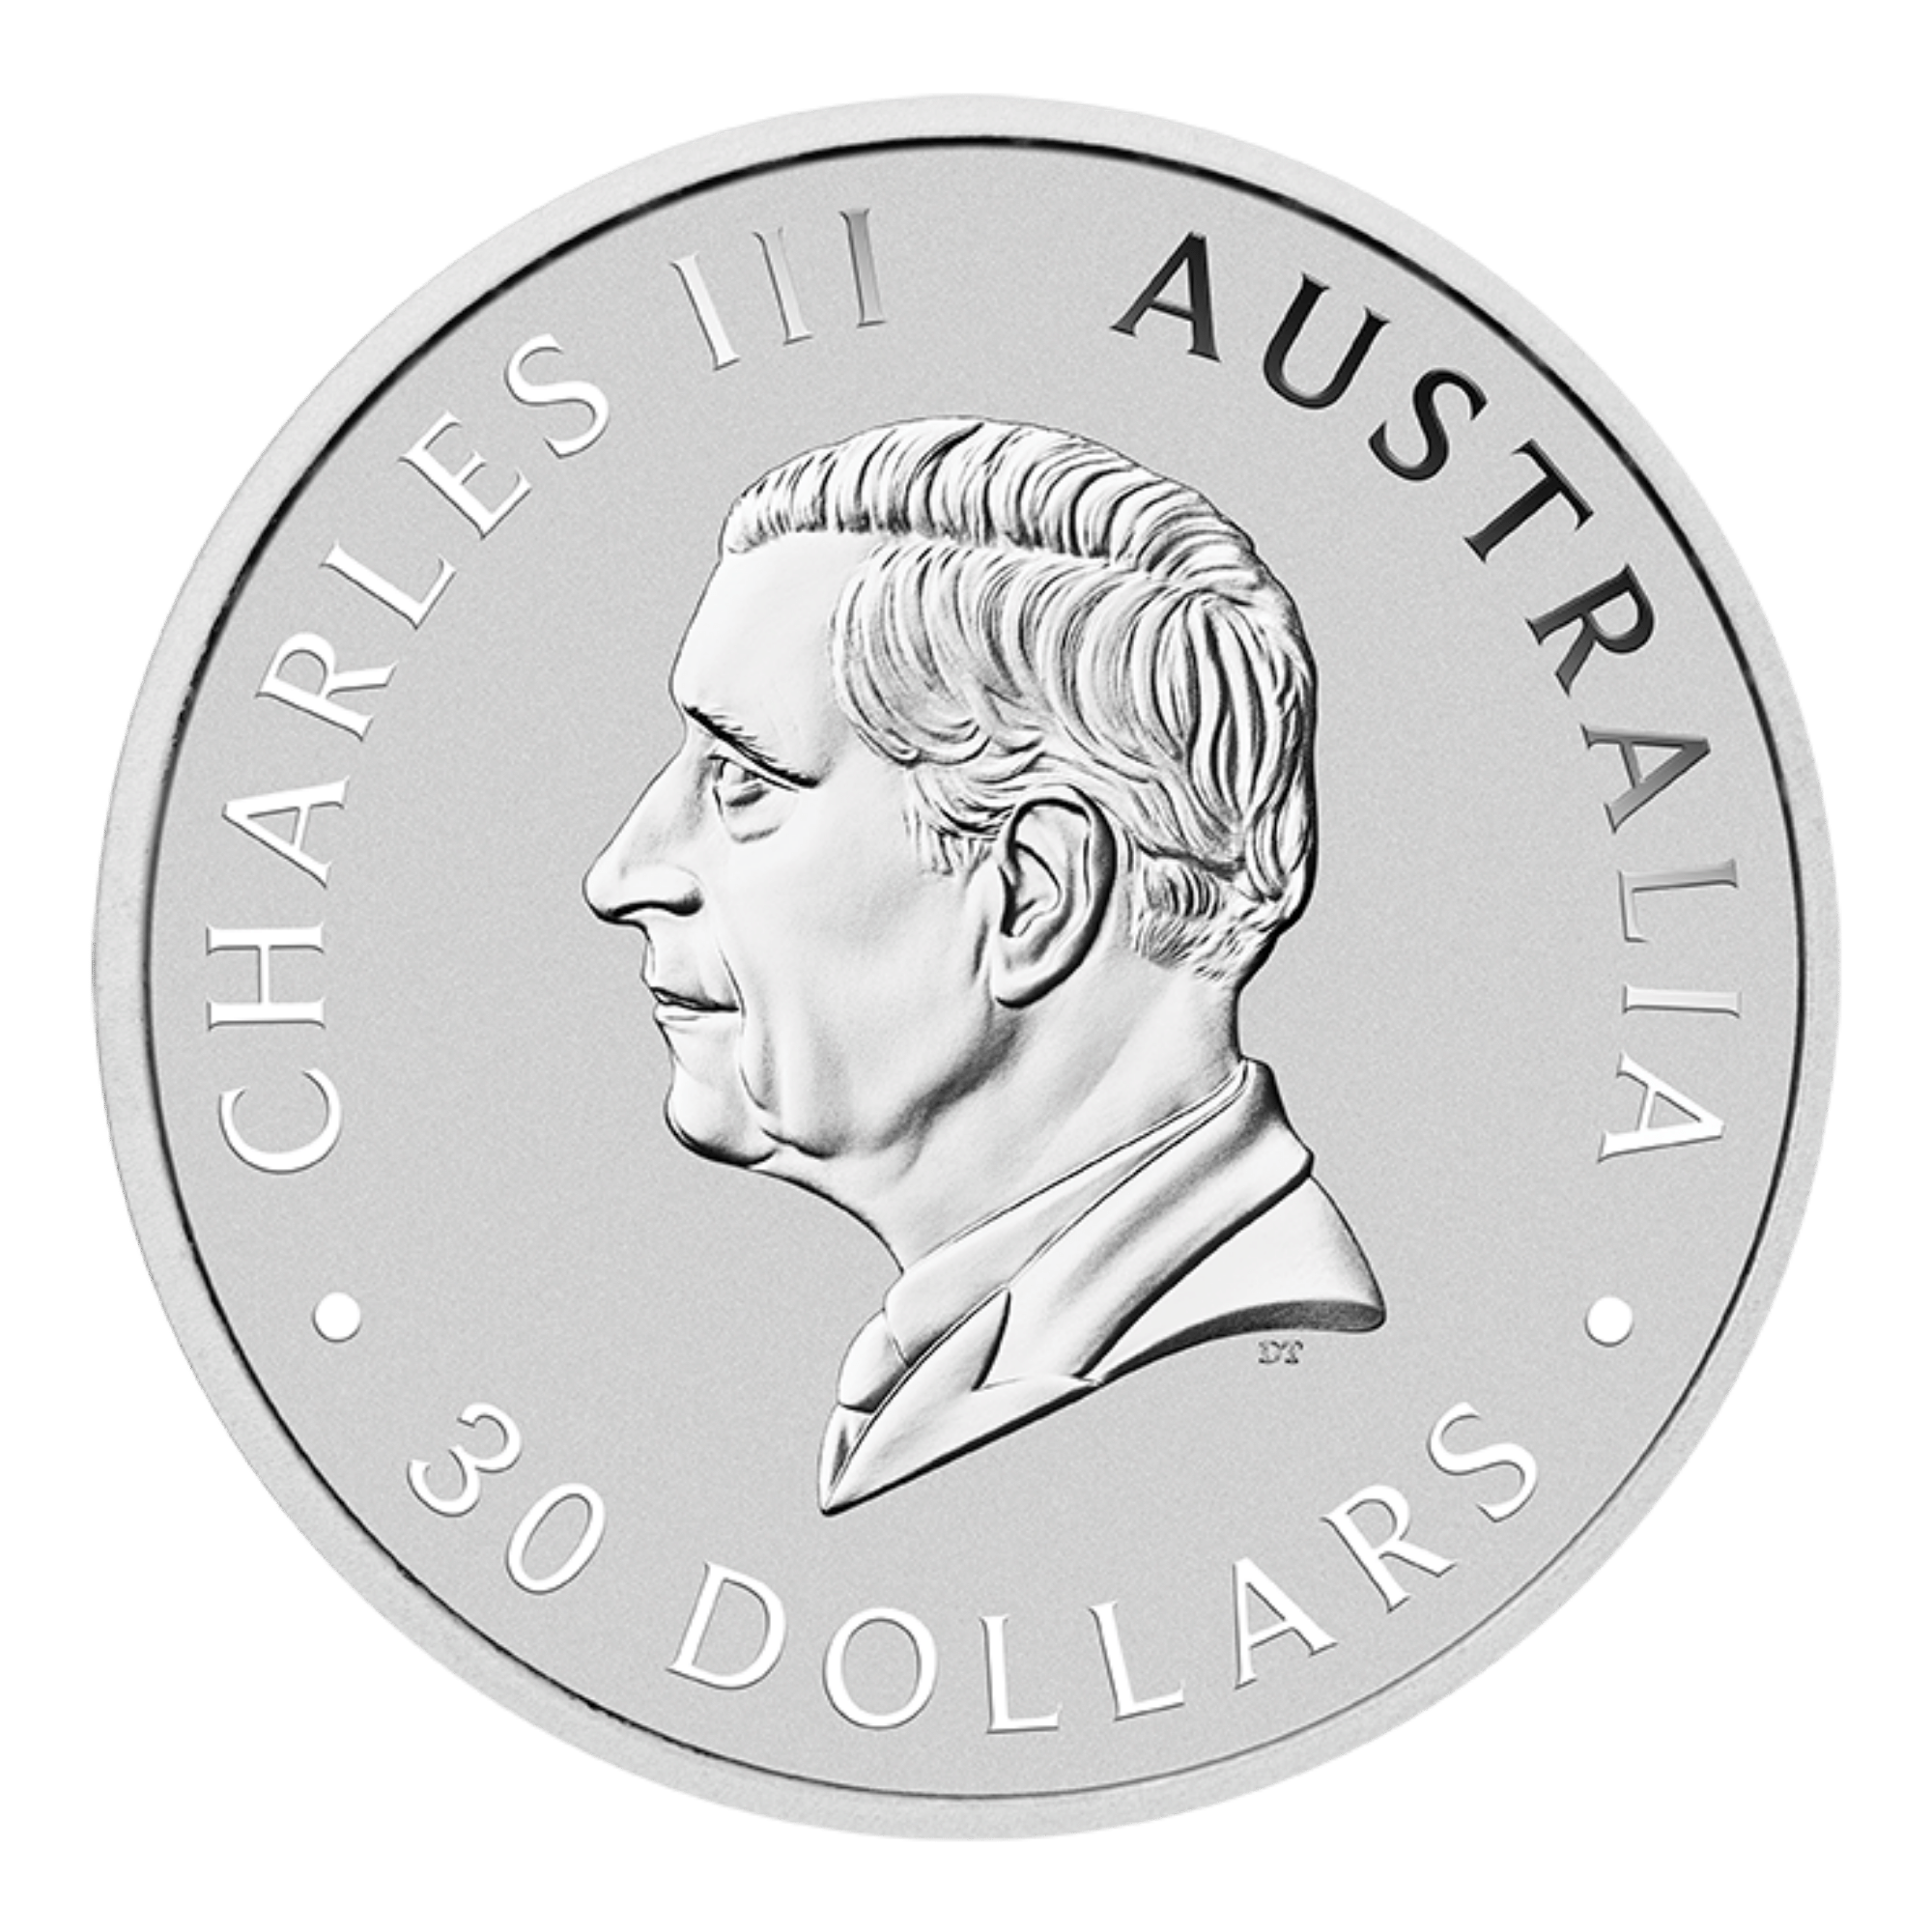 2024 1kg Perth Mint Silver Kookaburra Coin